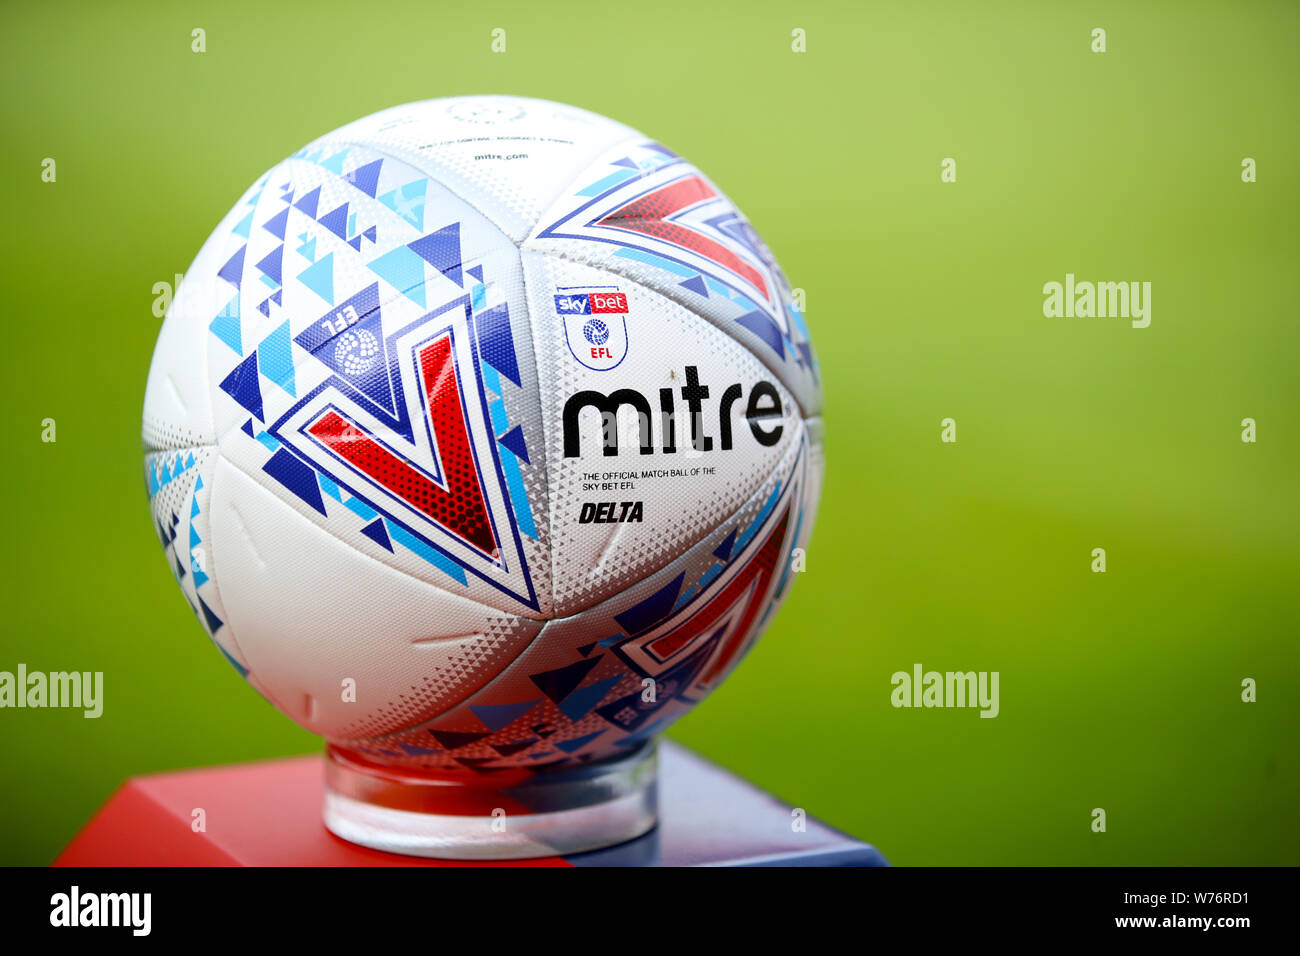 Die EFL Mitre Spieltag Kugel auf einem Sockel Stockfoto